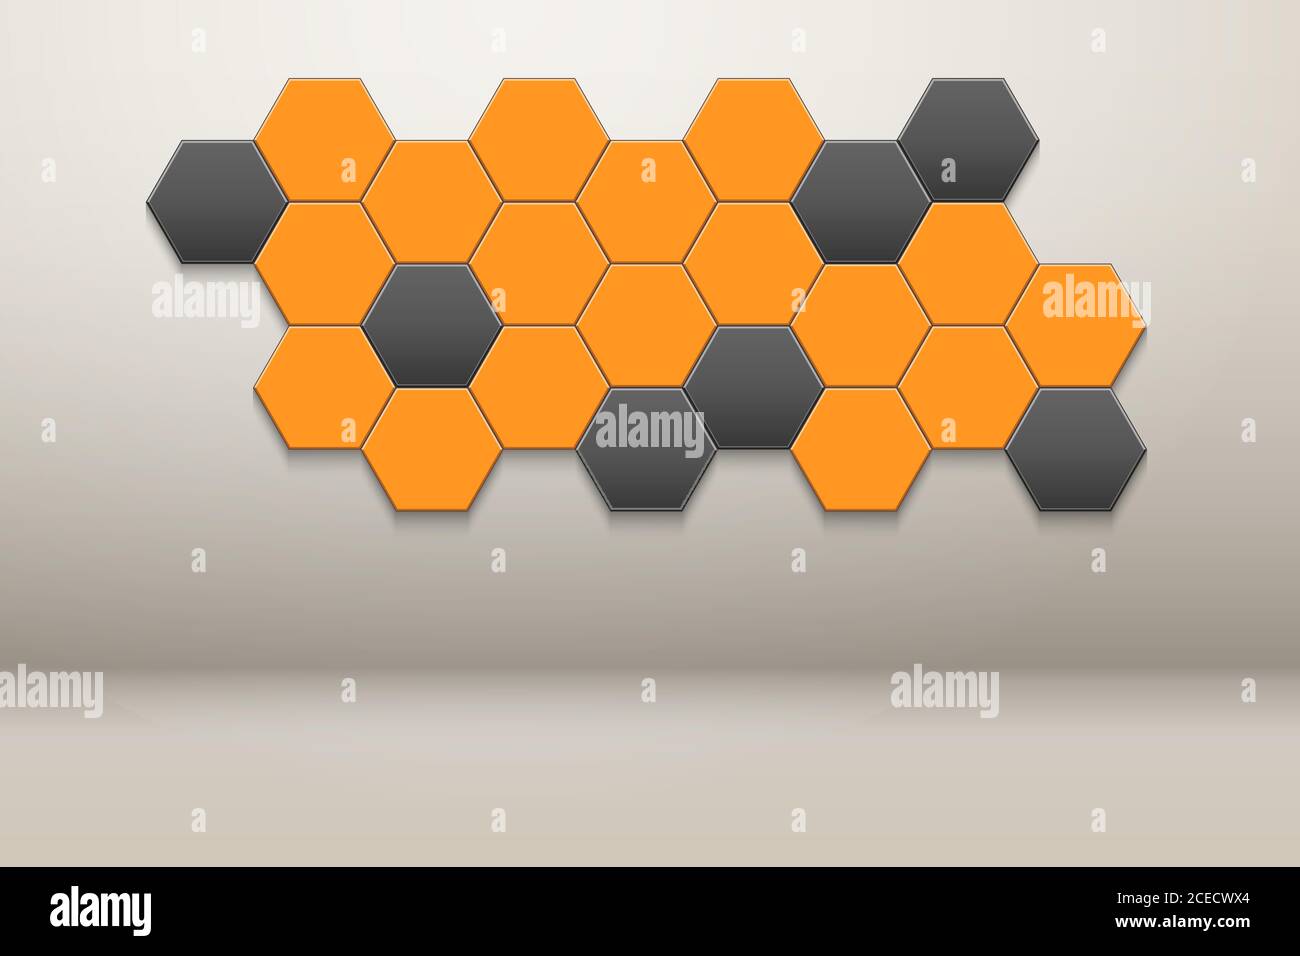 Arredamento a nido d'ape Hexagon Wall Illustrazione Vettoriale